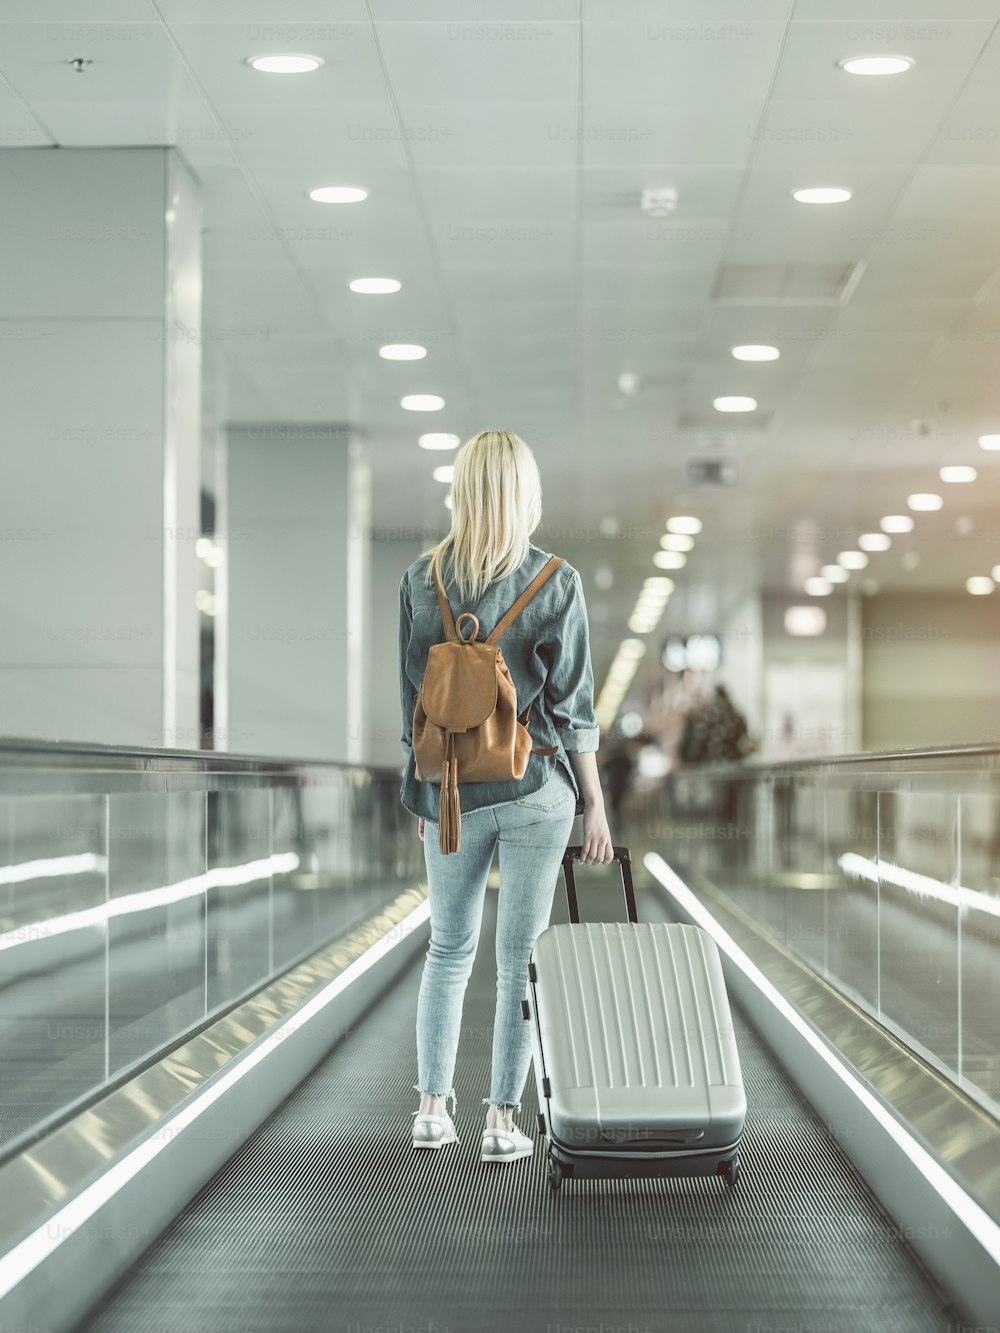 Femme pleine longueur gardant une grande valise sur l’escalator à l’aéroport. Concept de touriste pendant le voyage